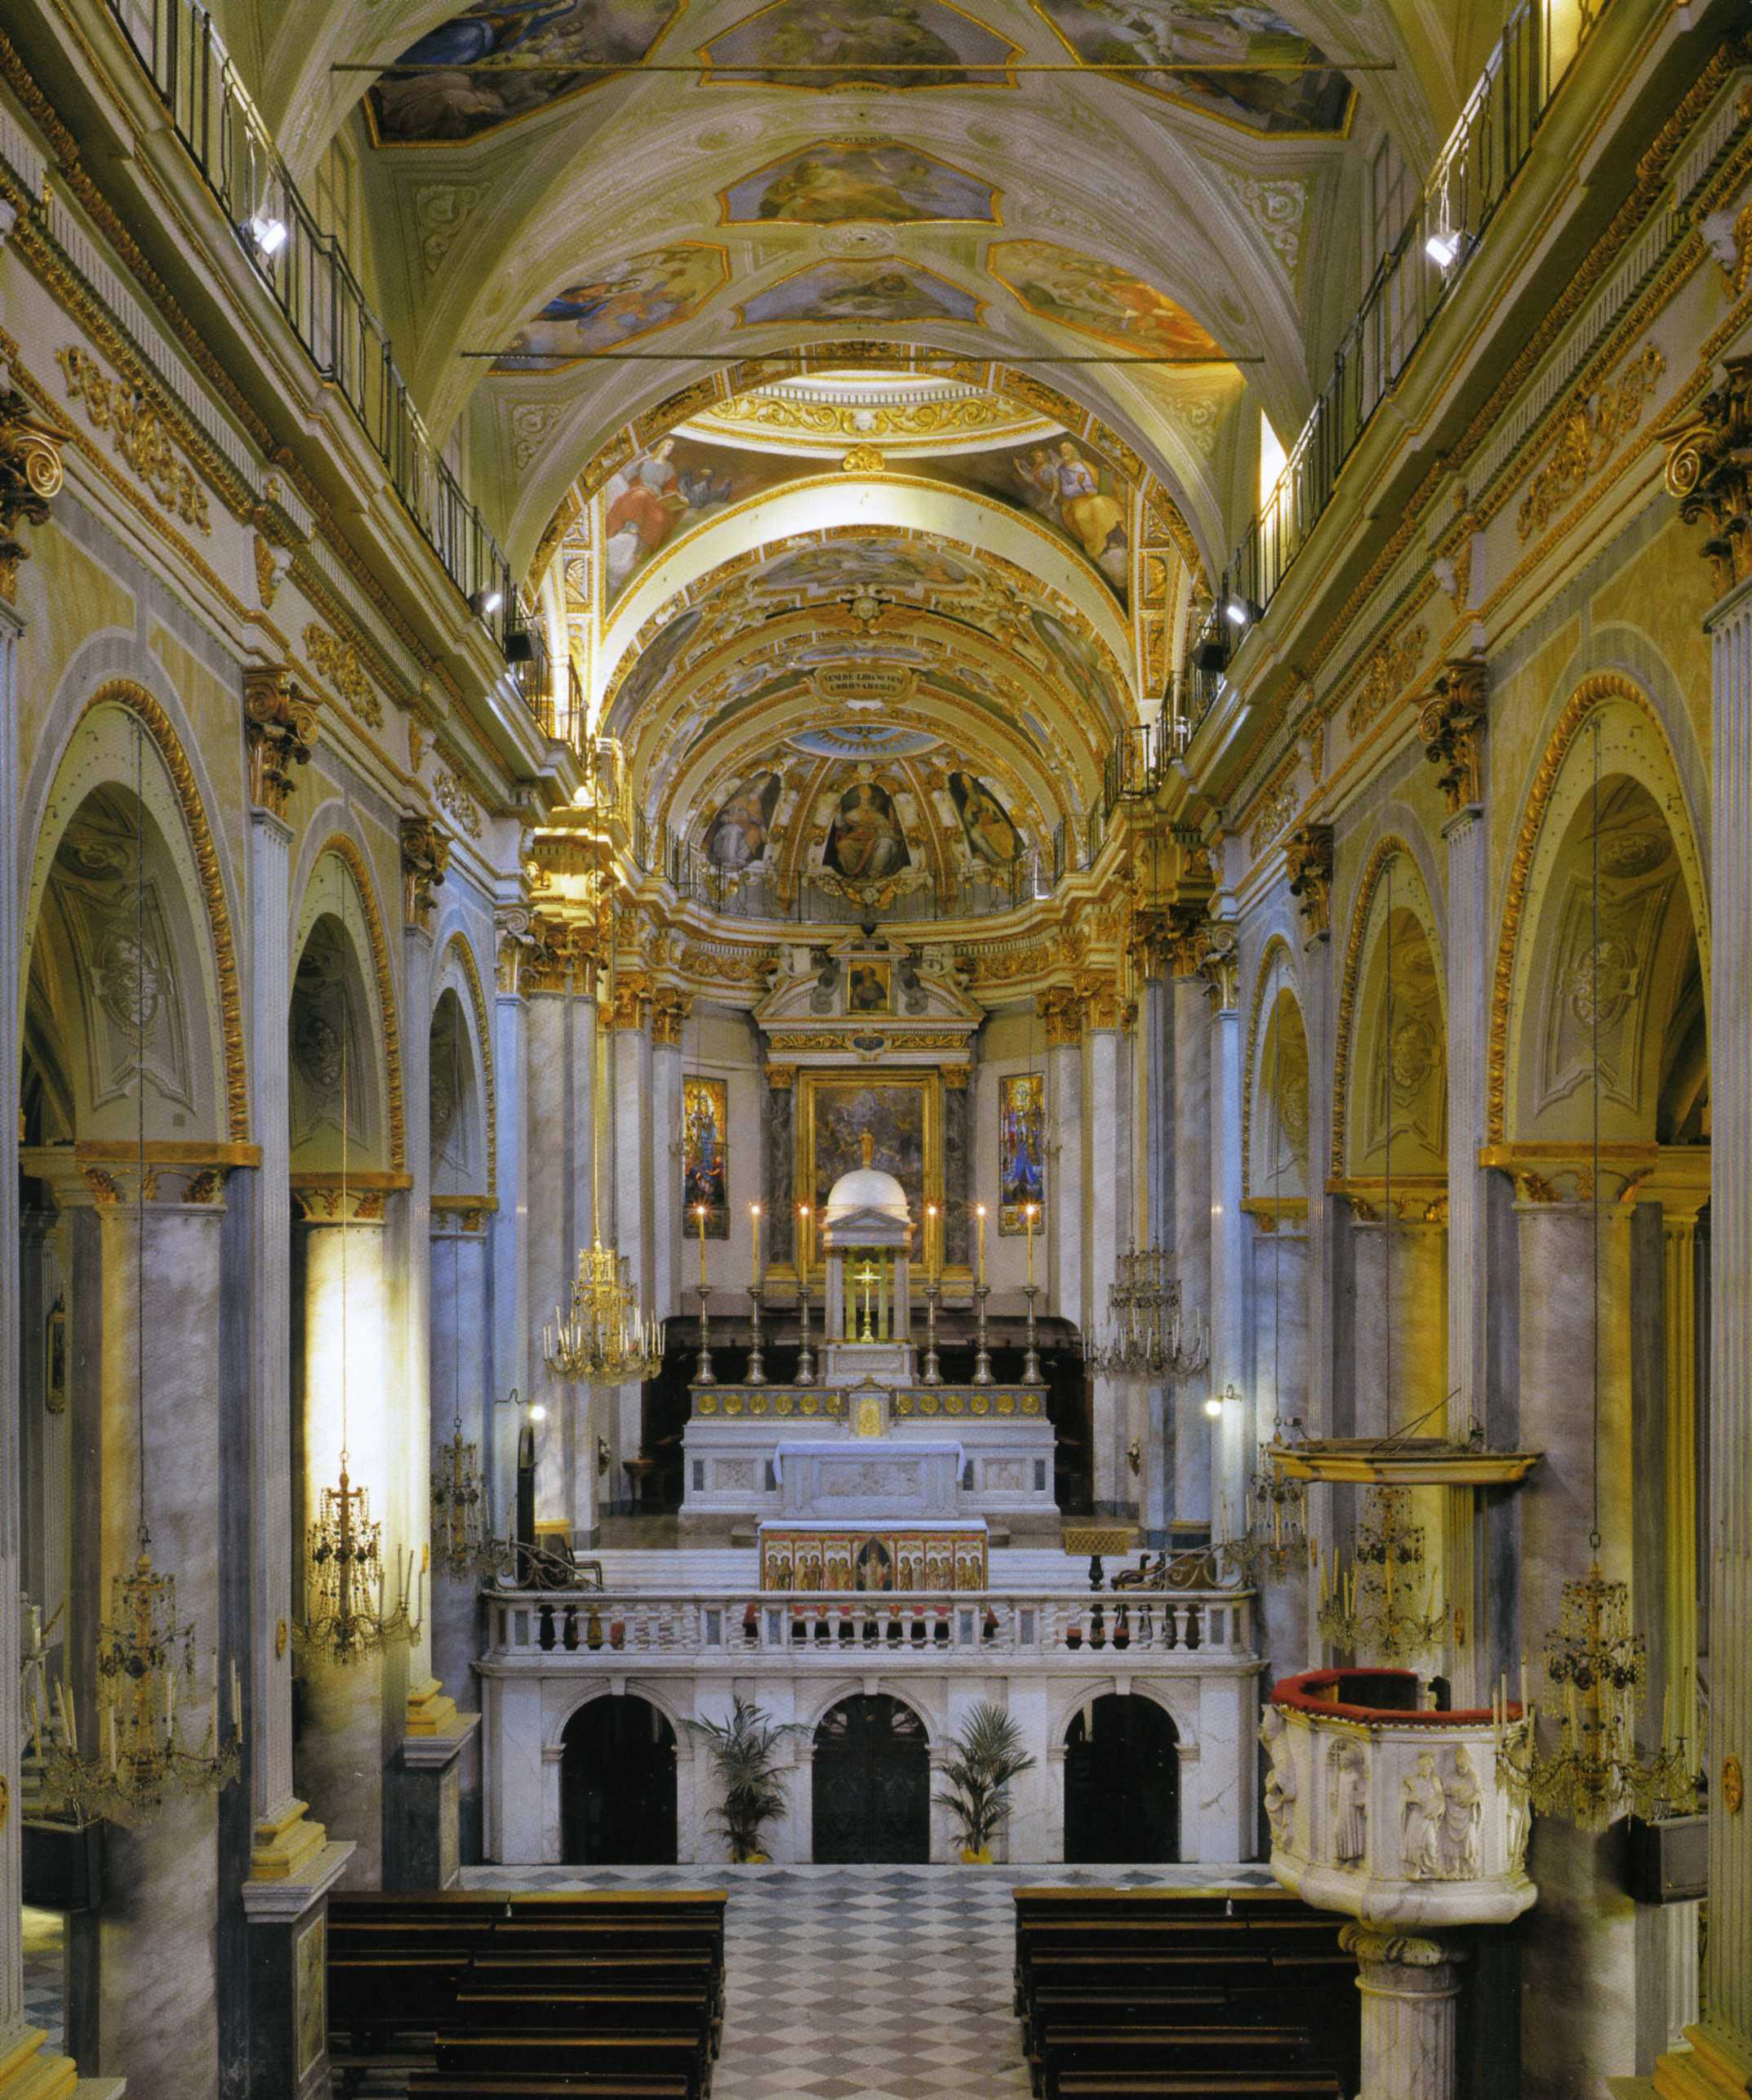 L'interno della Cattedrale @ Cattedrale di Santa Maria Assunta